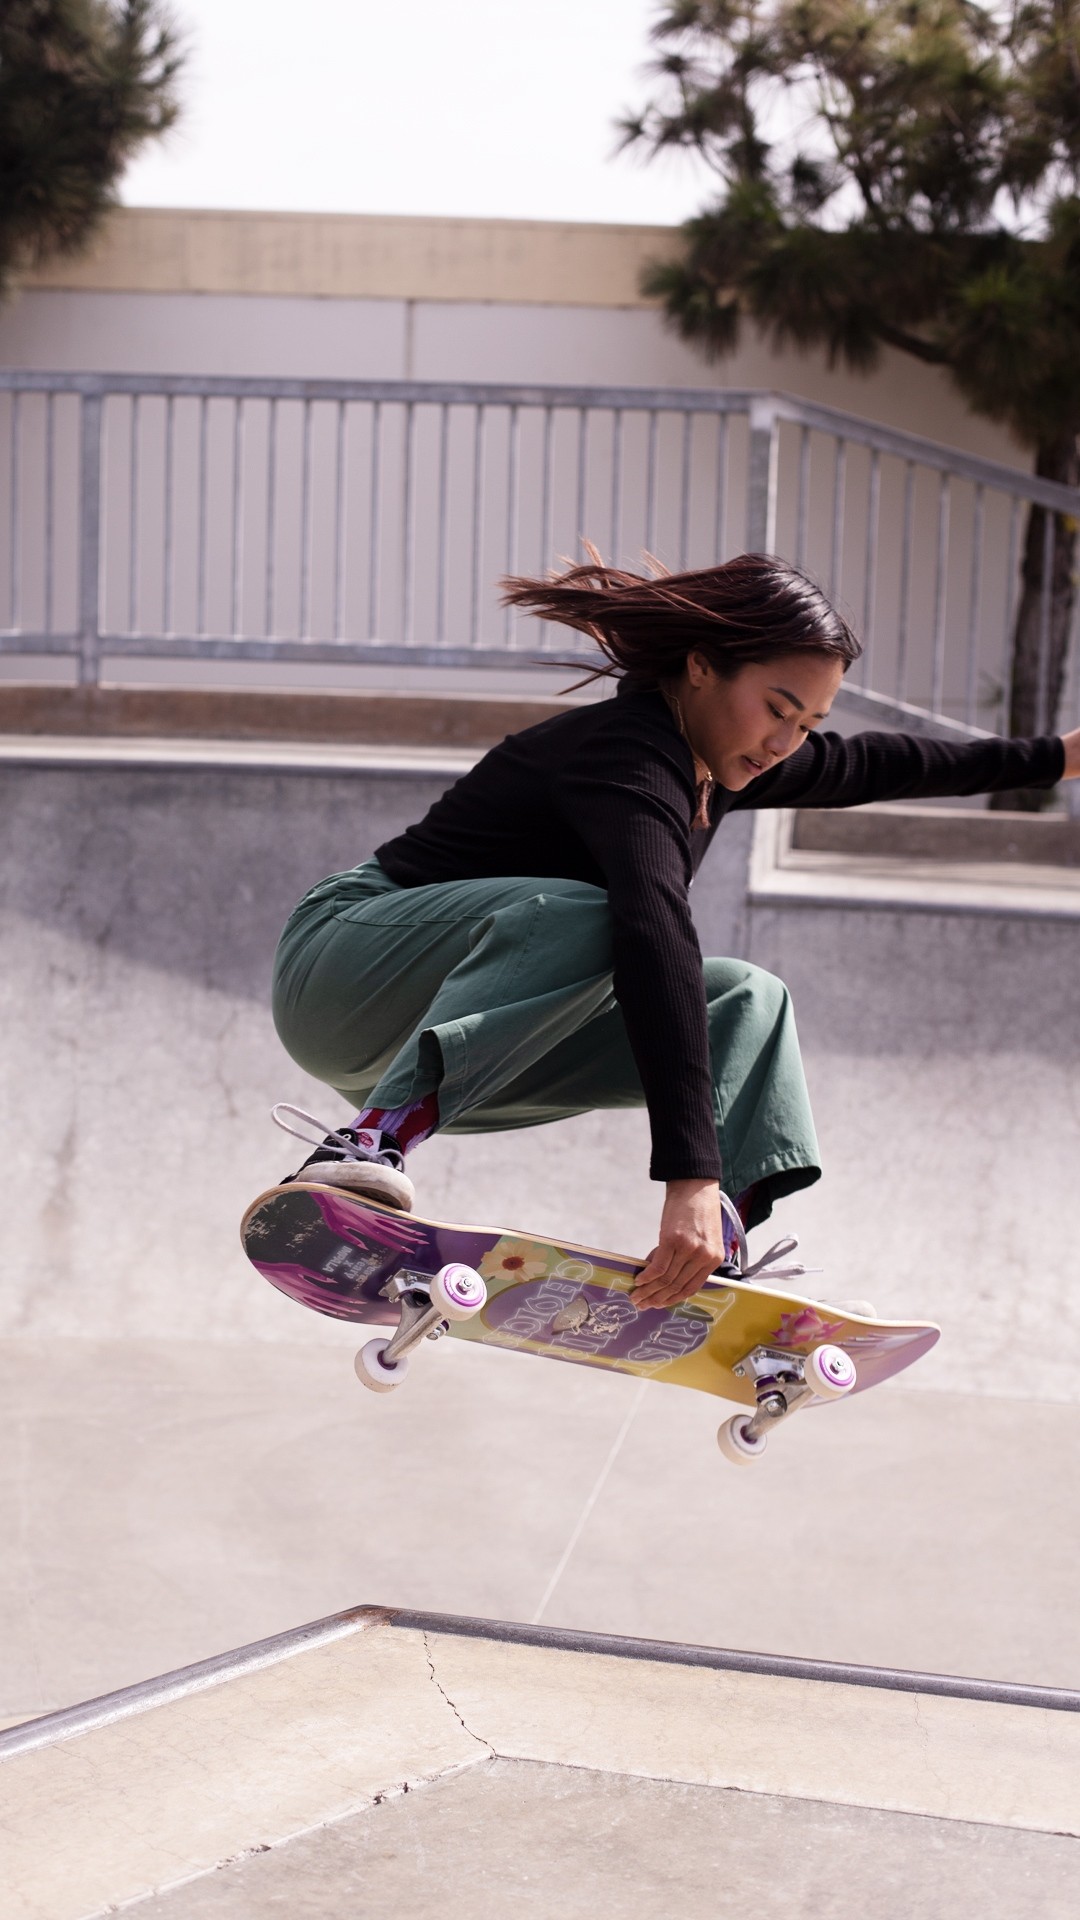 Wir sind schon jetzt bereit für den Frühling! Passend dazu eingetroffen: das Impala Mystic Skateboard, welches dank des Artworks der Künstlerin Pea the Feary mit der Sonne um die Wette strahlt! Gönne Dir jetzt Dein neues Skateboard ✌️